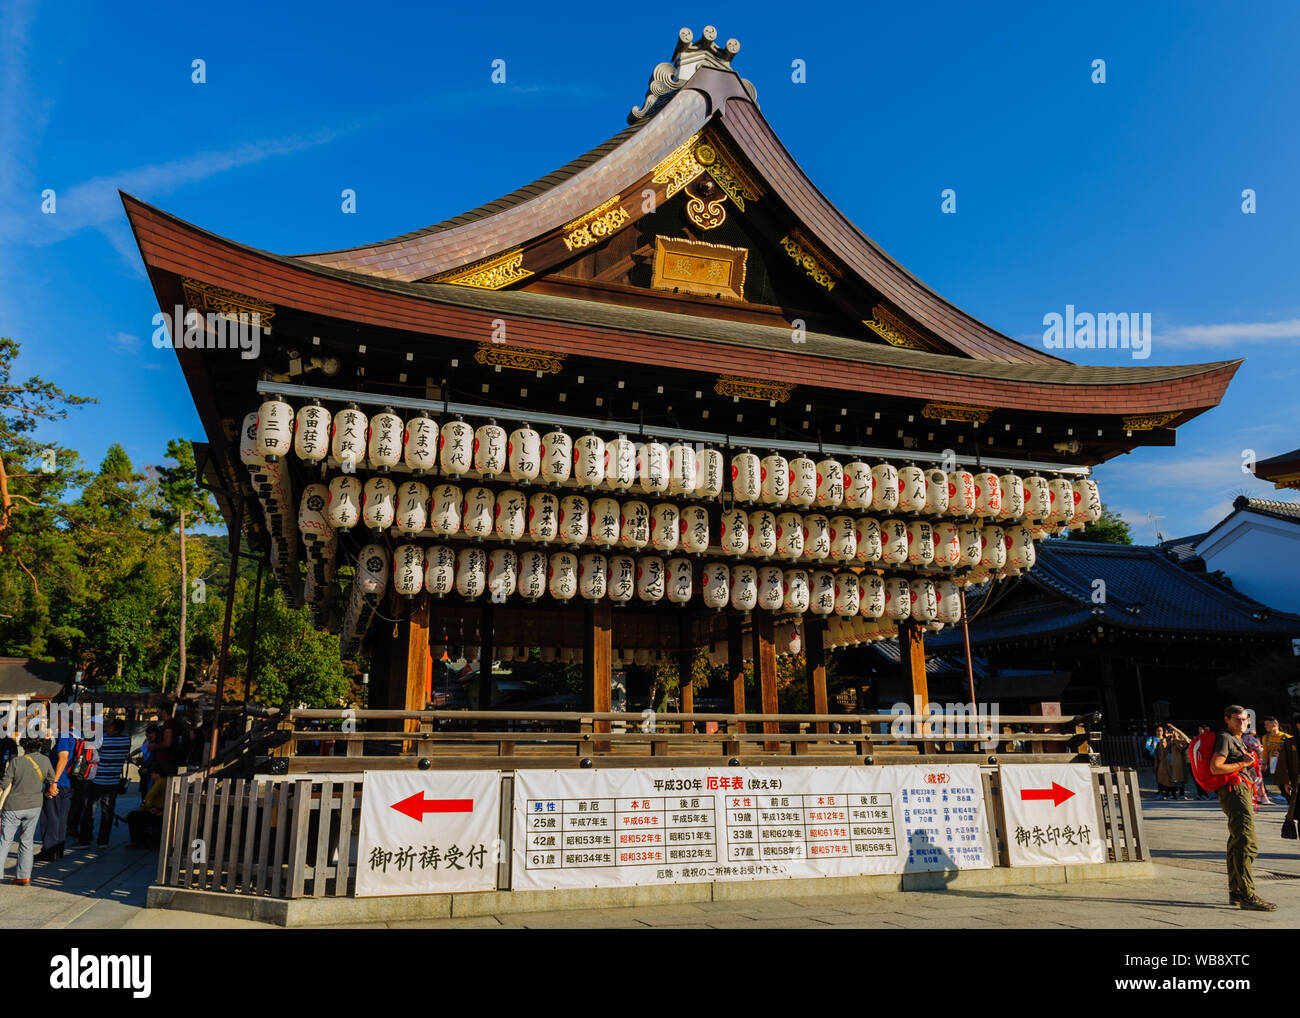 Configurazione astratta della tradizionale giapponese lanterne di carta sul tetto di un edificio del santuario di Yasaka Kyotos-jinja, Giappone Novembre 2018 Foto Stock